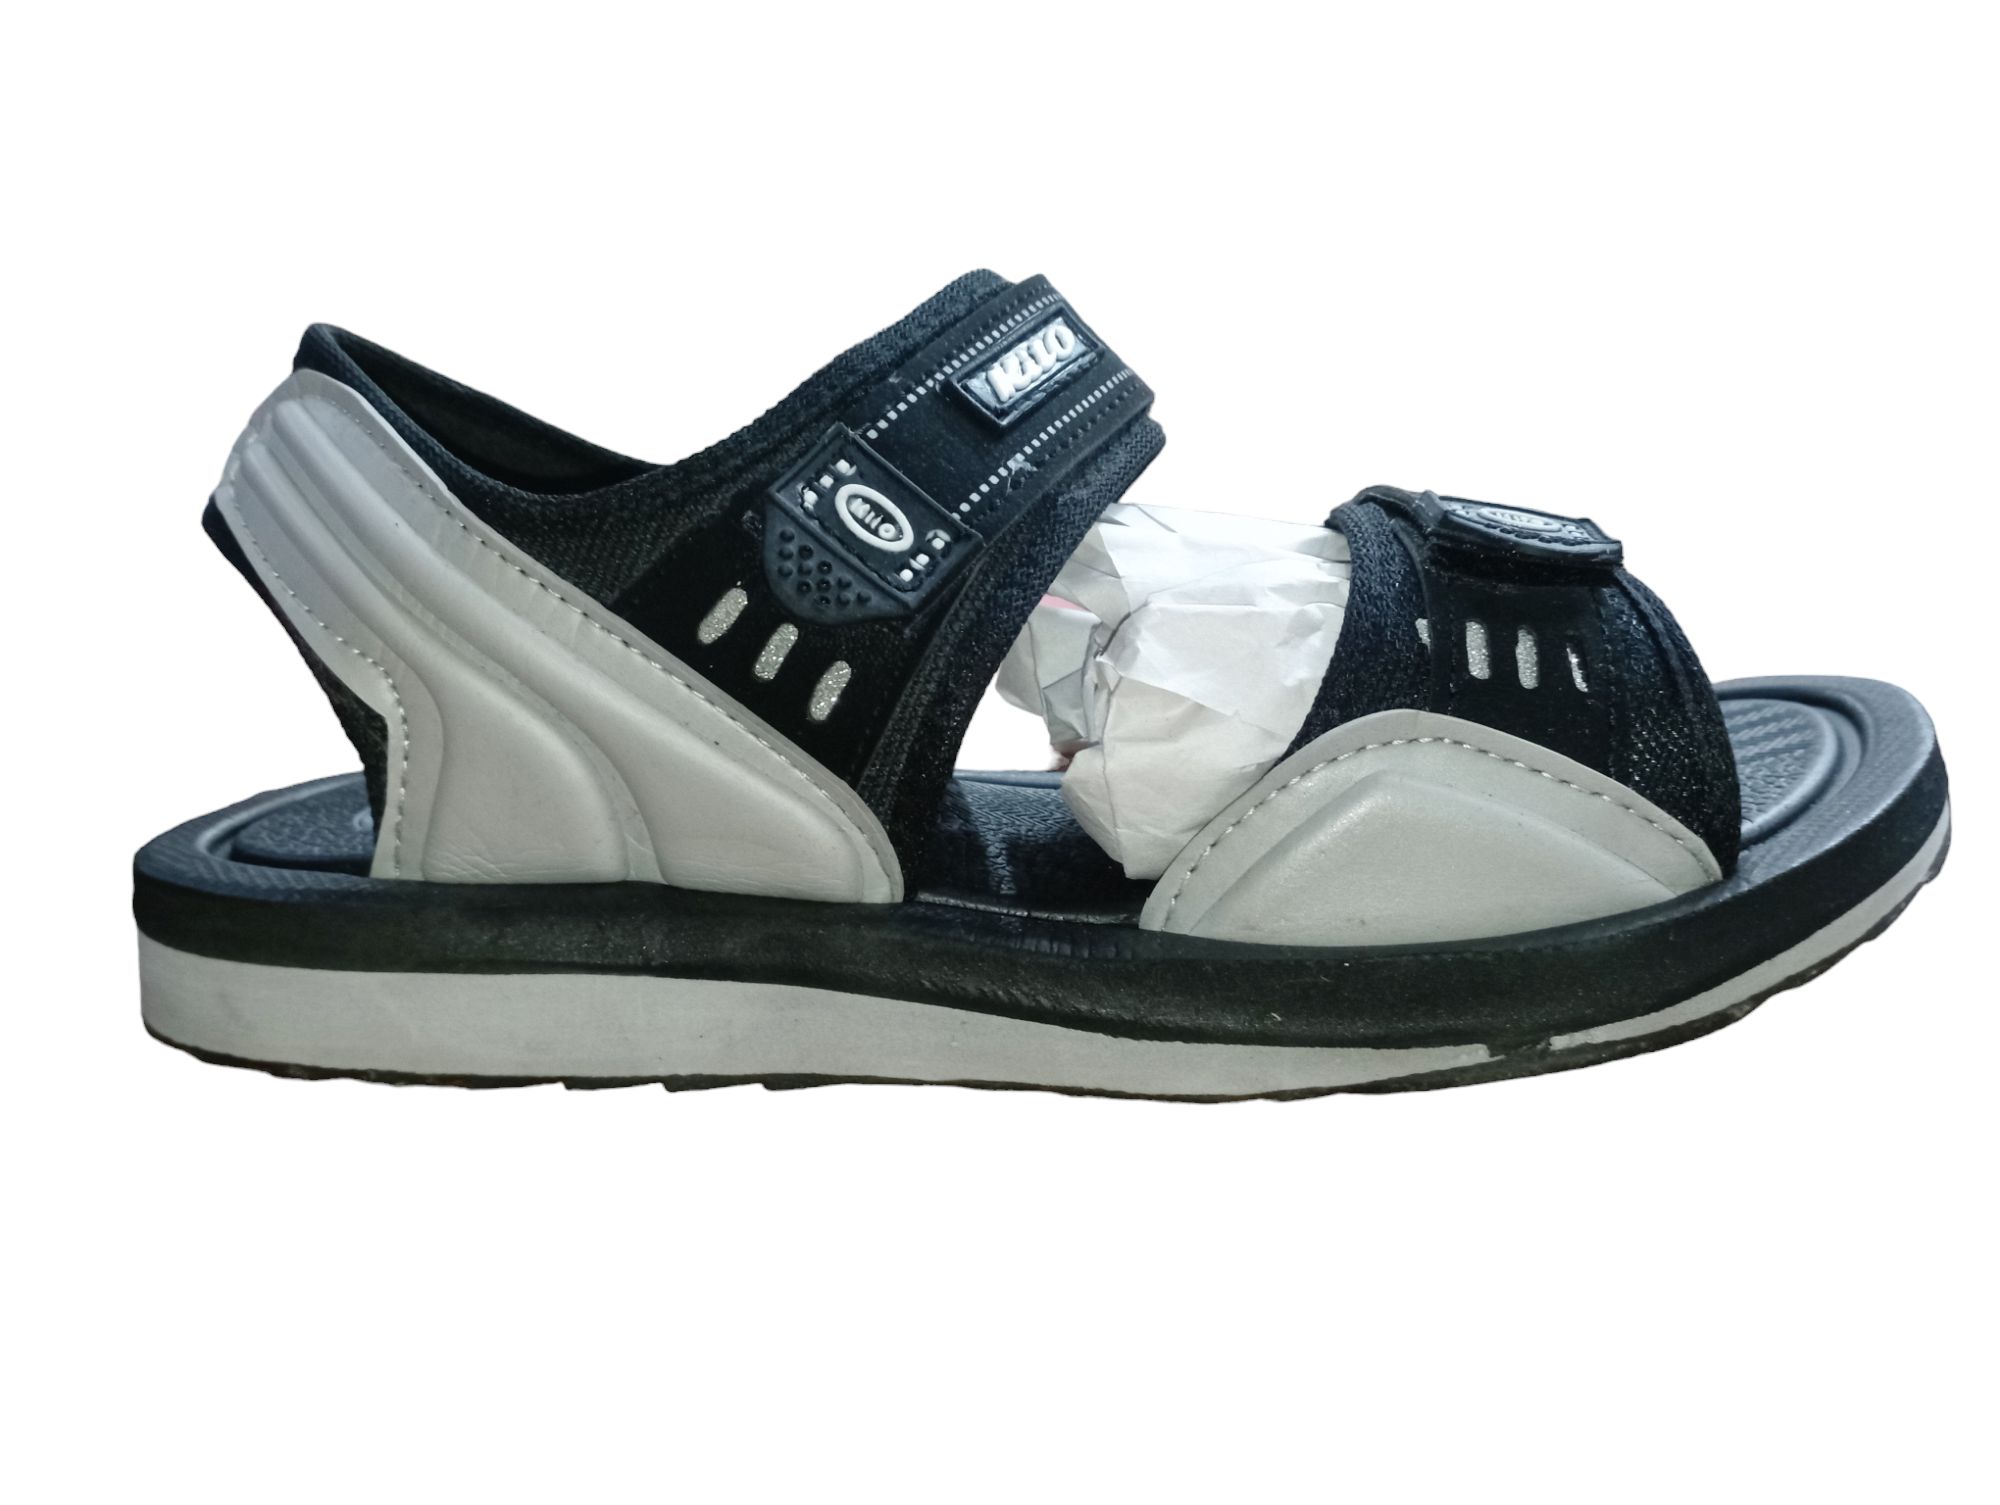 Kito Sandals Price in Nepal - Arad Branding